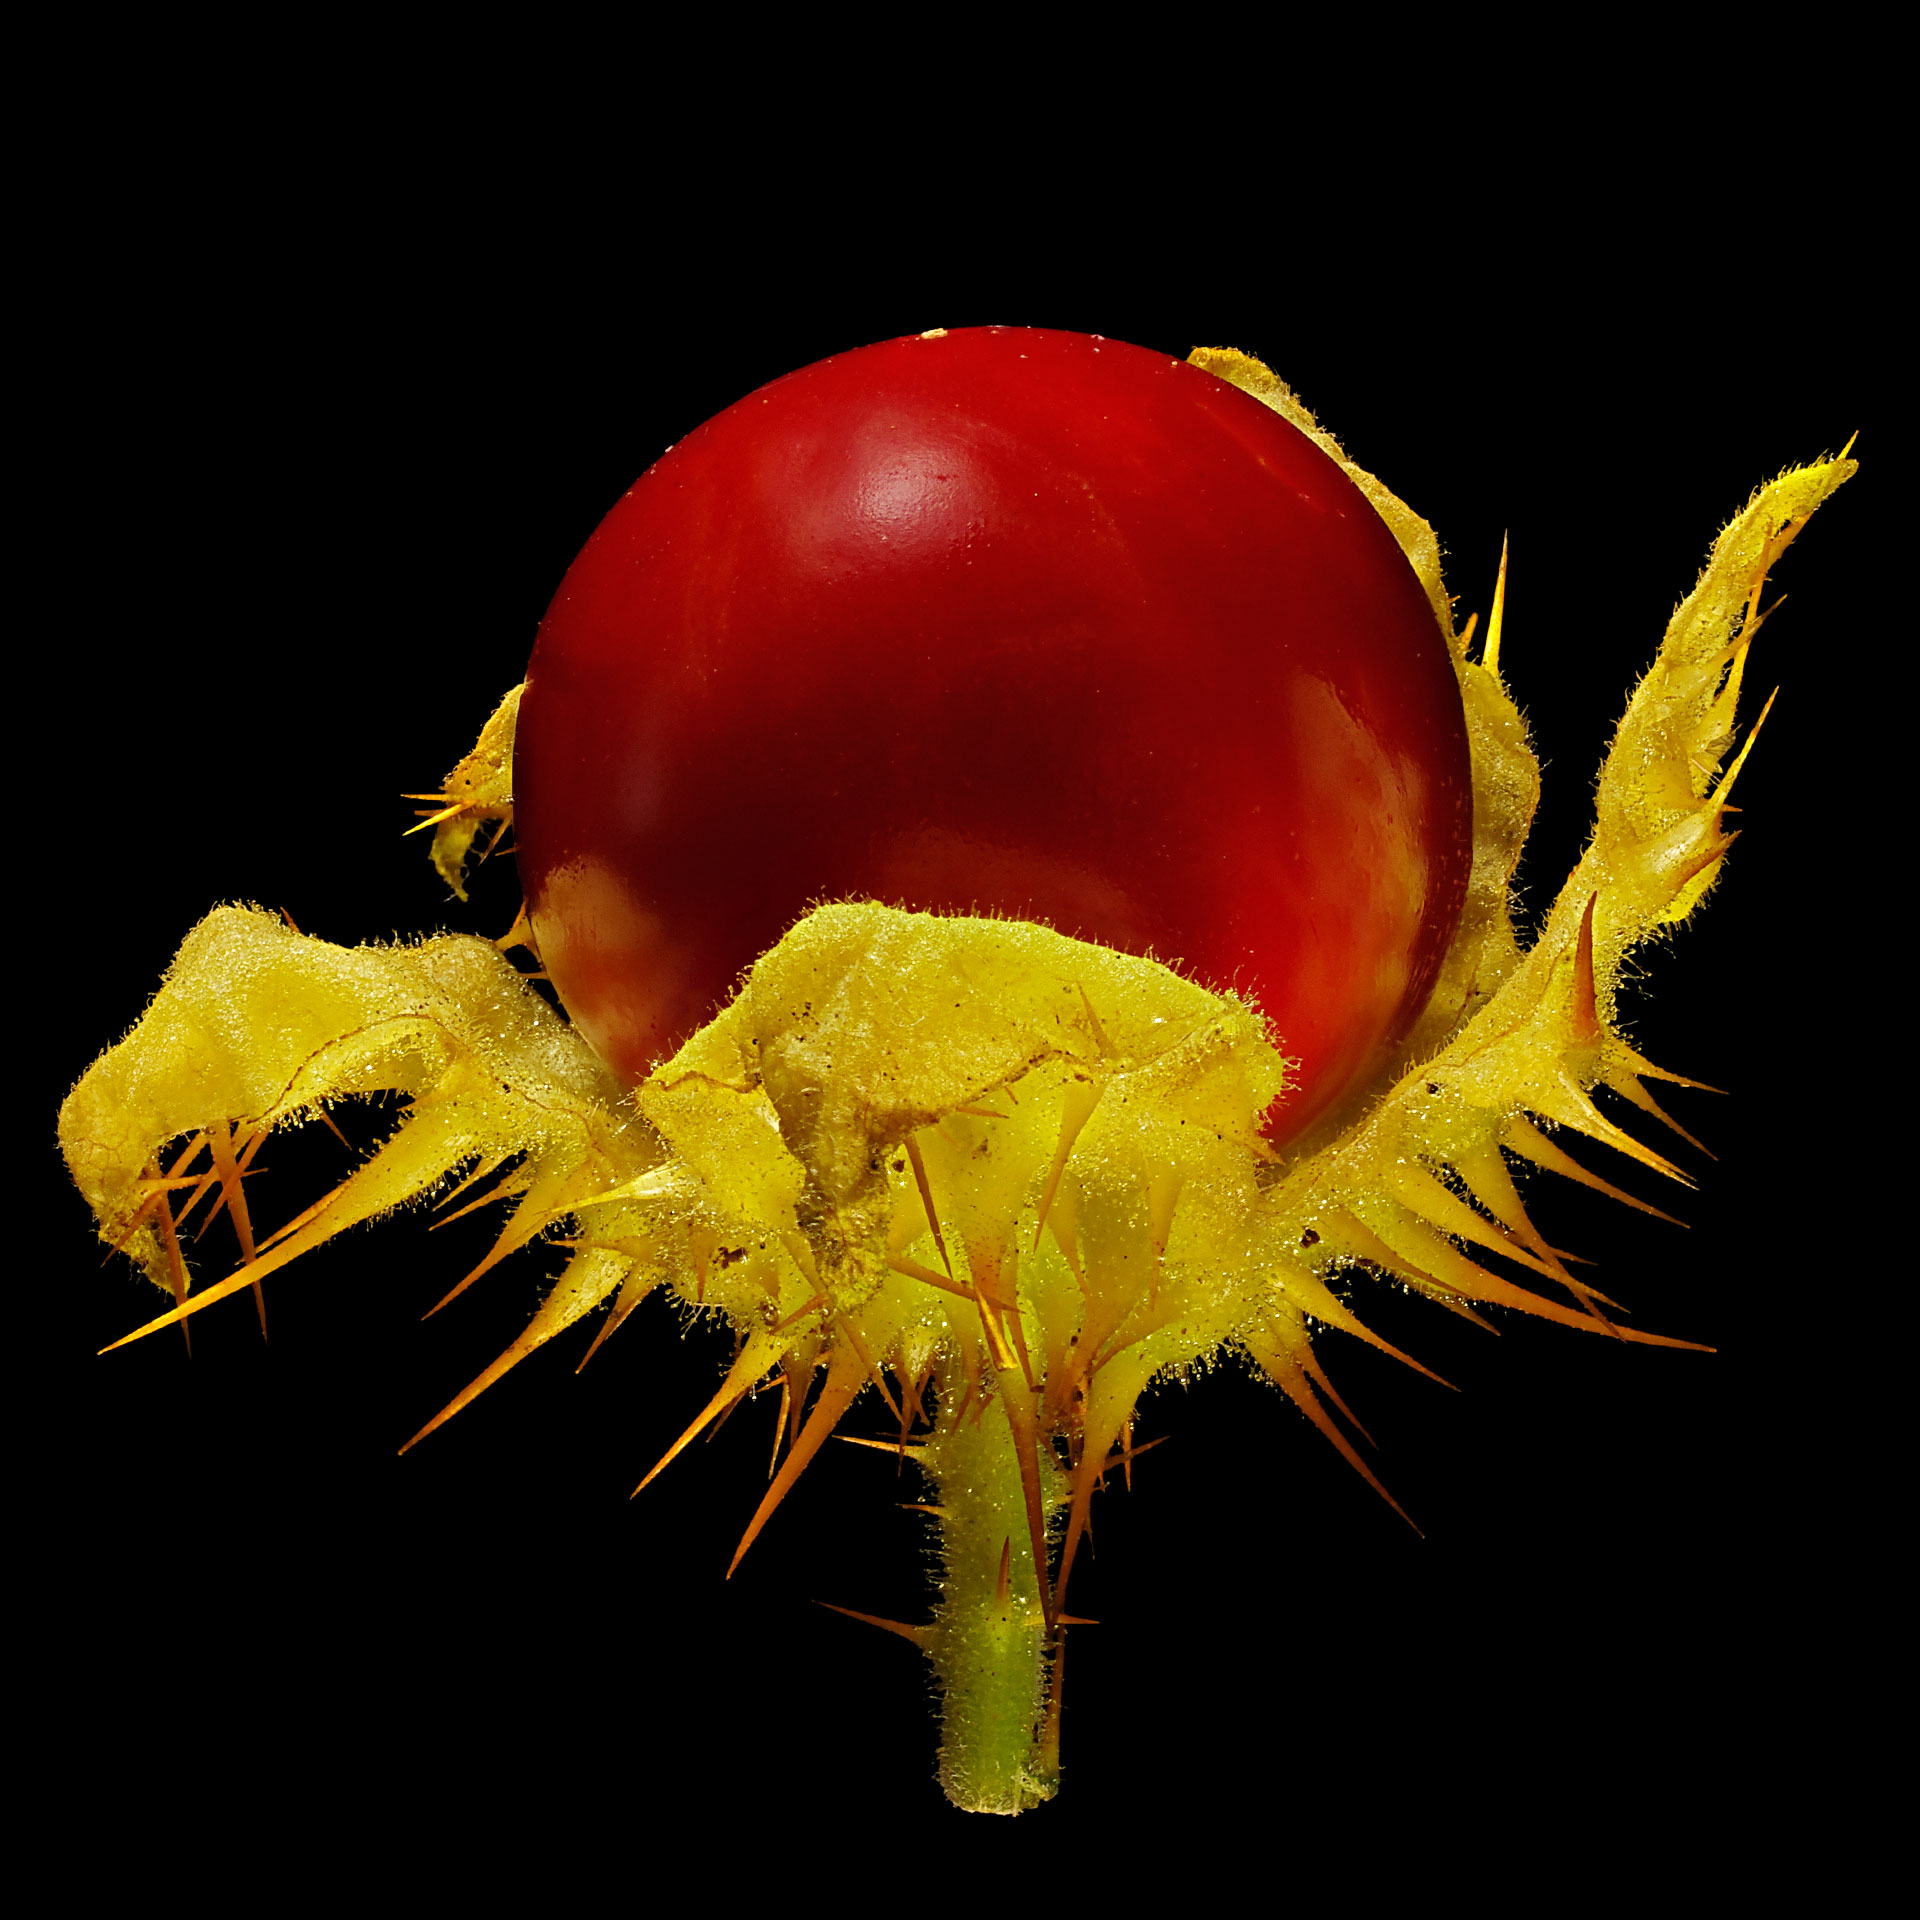 Sticky nightshade: Solanum sisymbriifolium